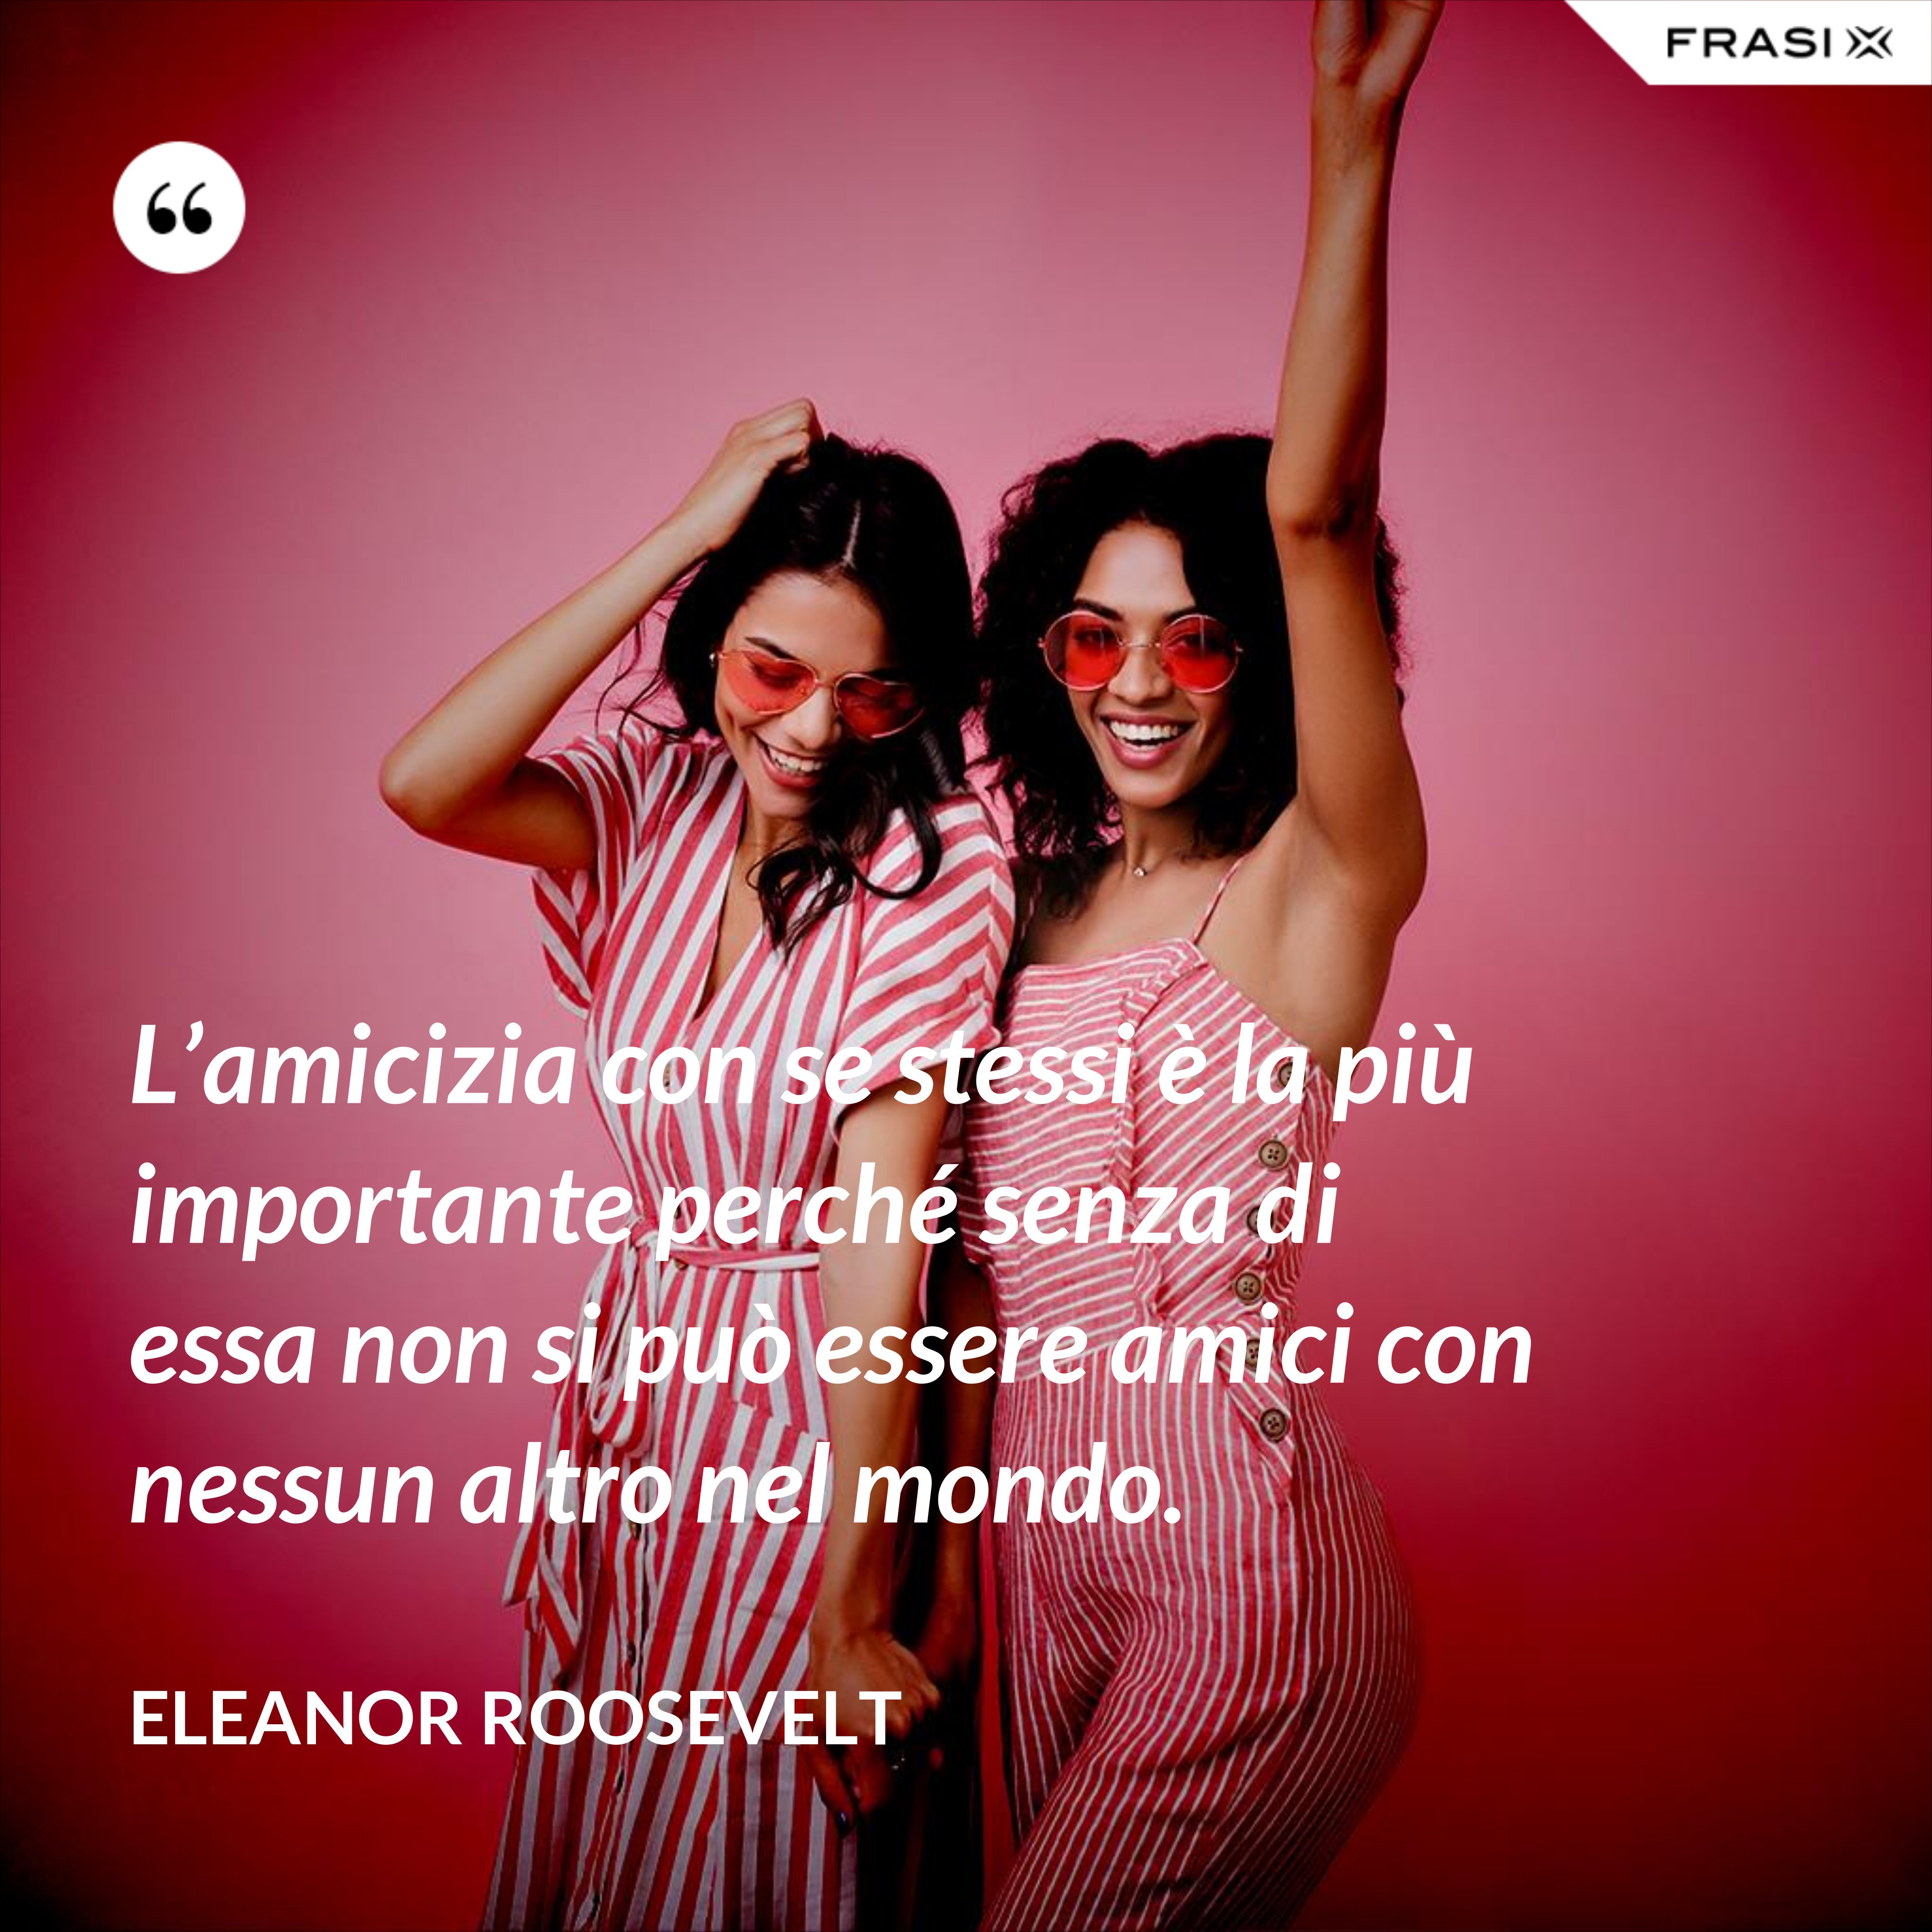 L’amicizia con se stessi è la più importante perché senza di essa non si può essere amici con nessun altro nel mondo. - Eleanor Roosevelt